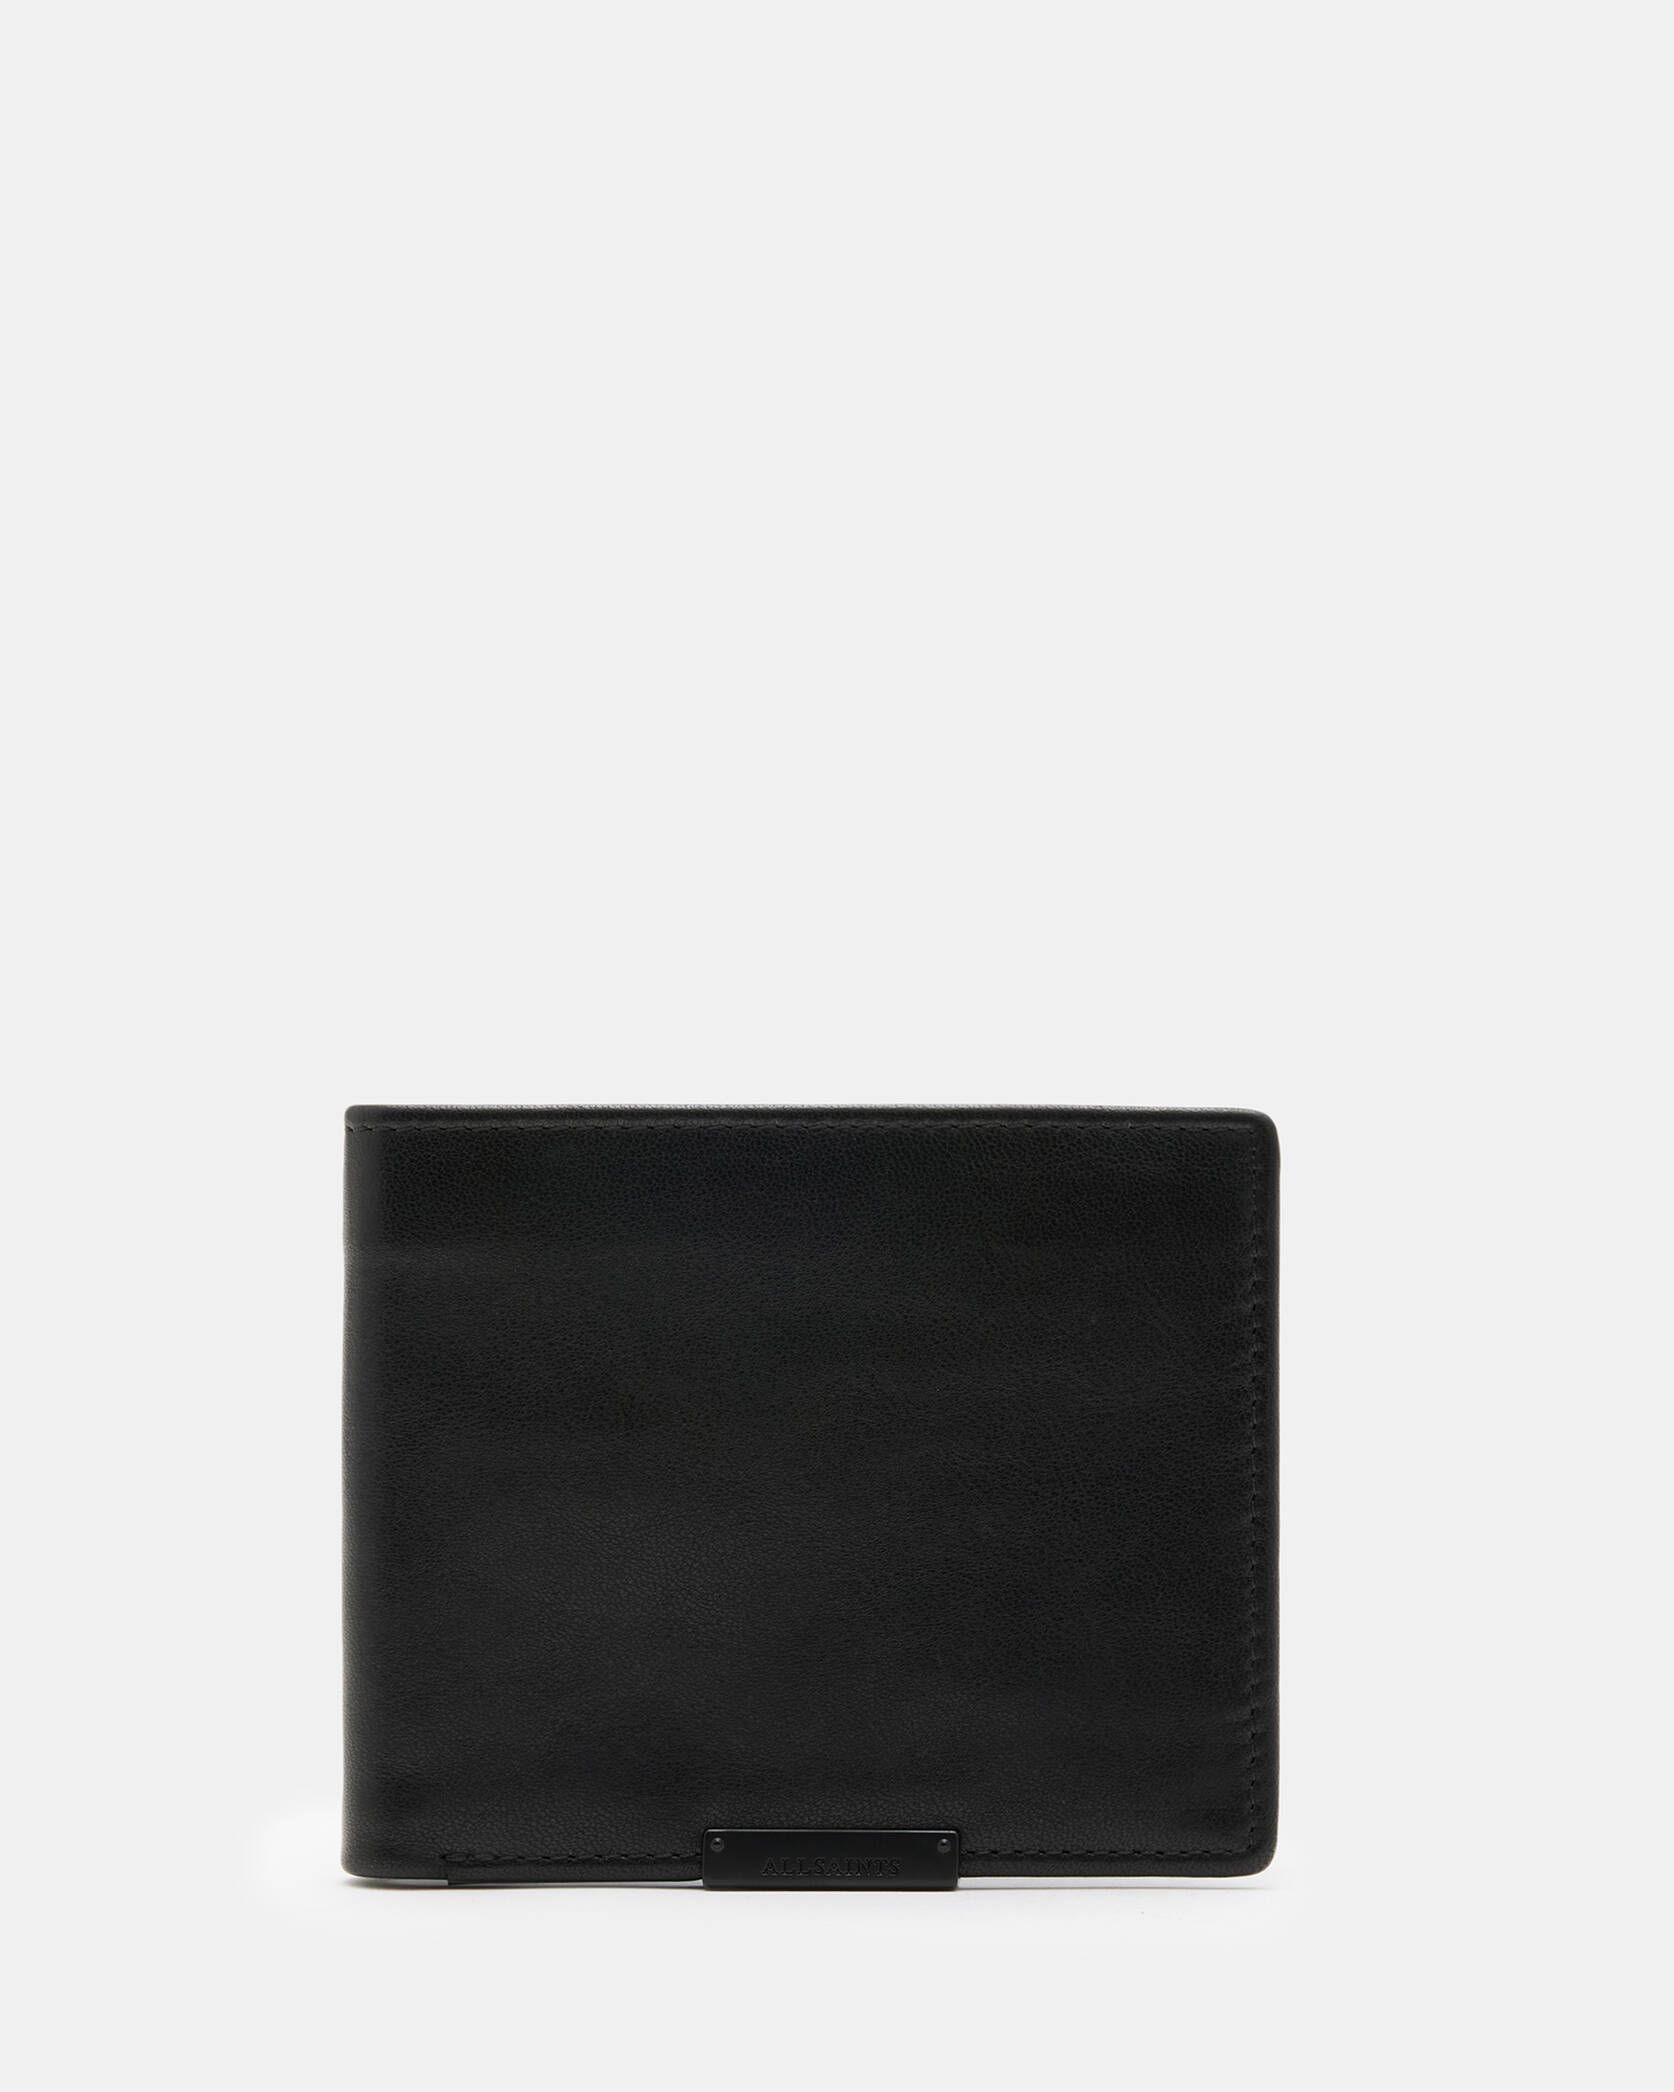 Attain Leather Cardholder Wallet Black | ALLSAINTS US | AllSaints US